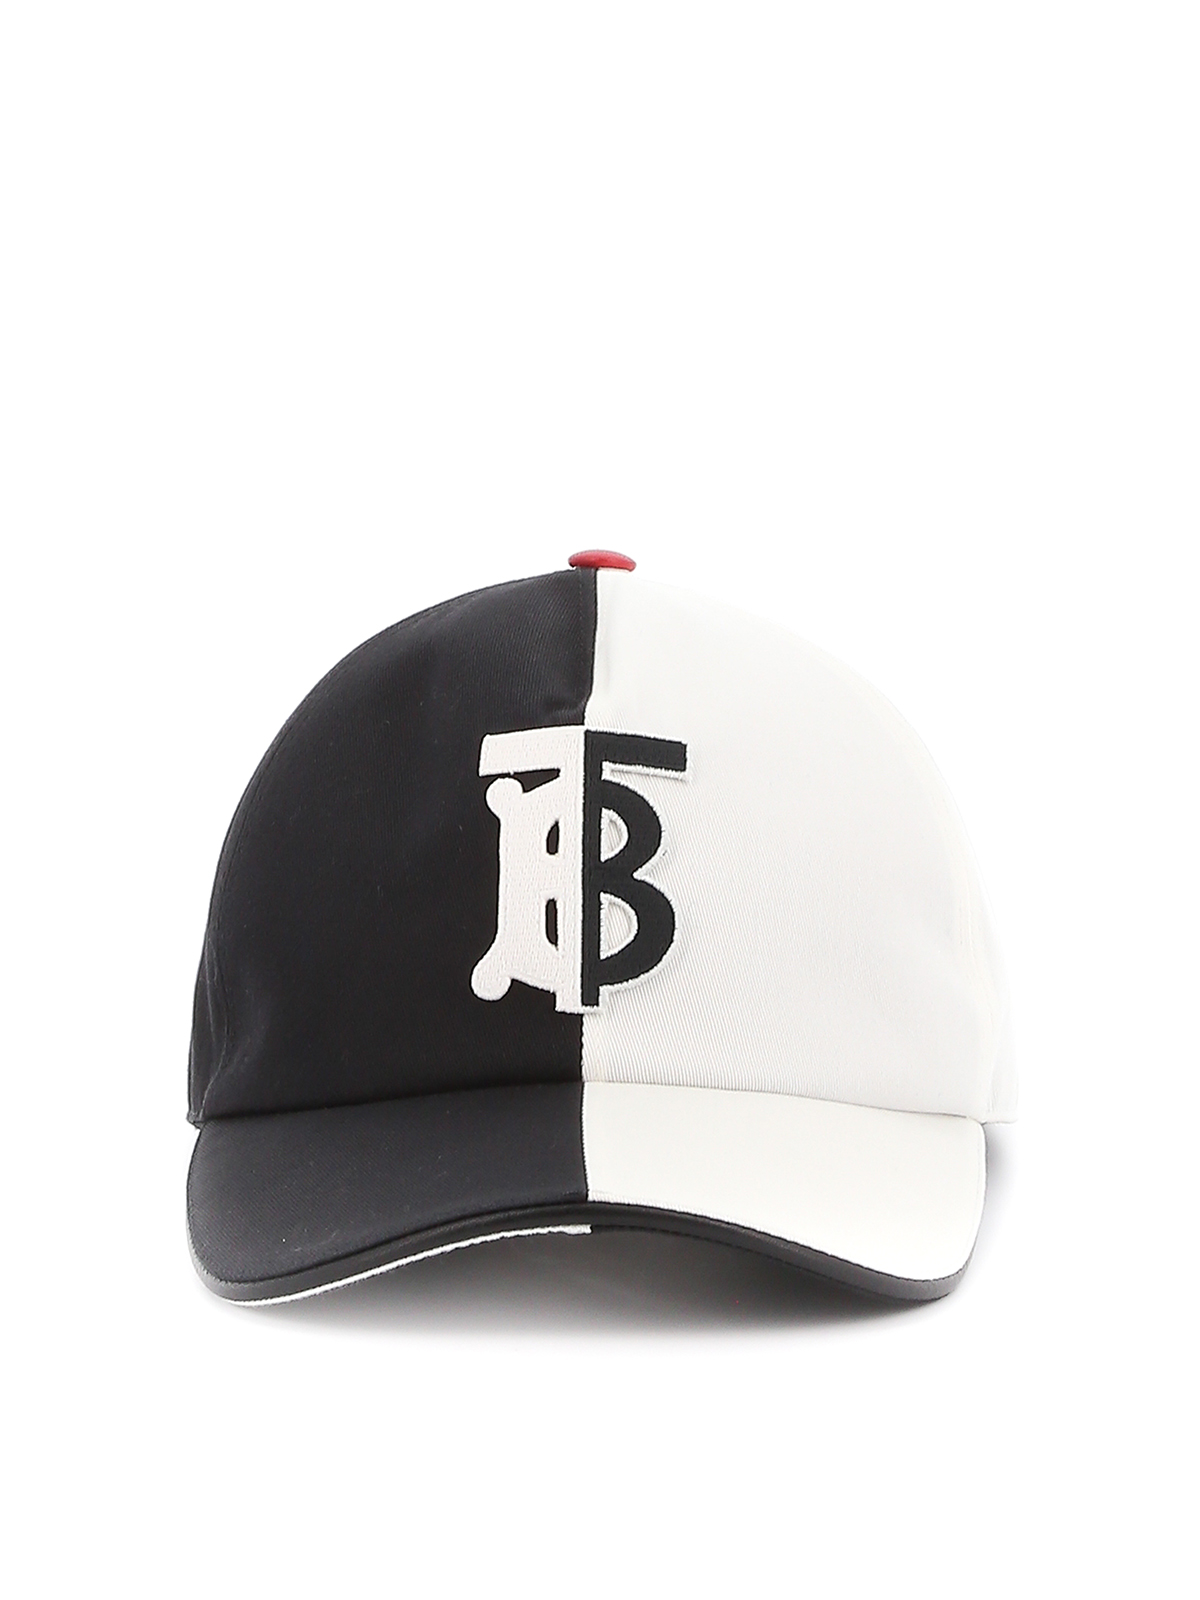 Hats & caps - Trucker baseball cap - | iKRIX.com